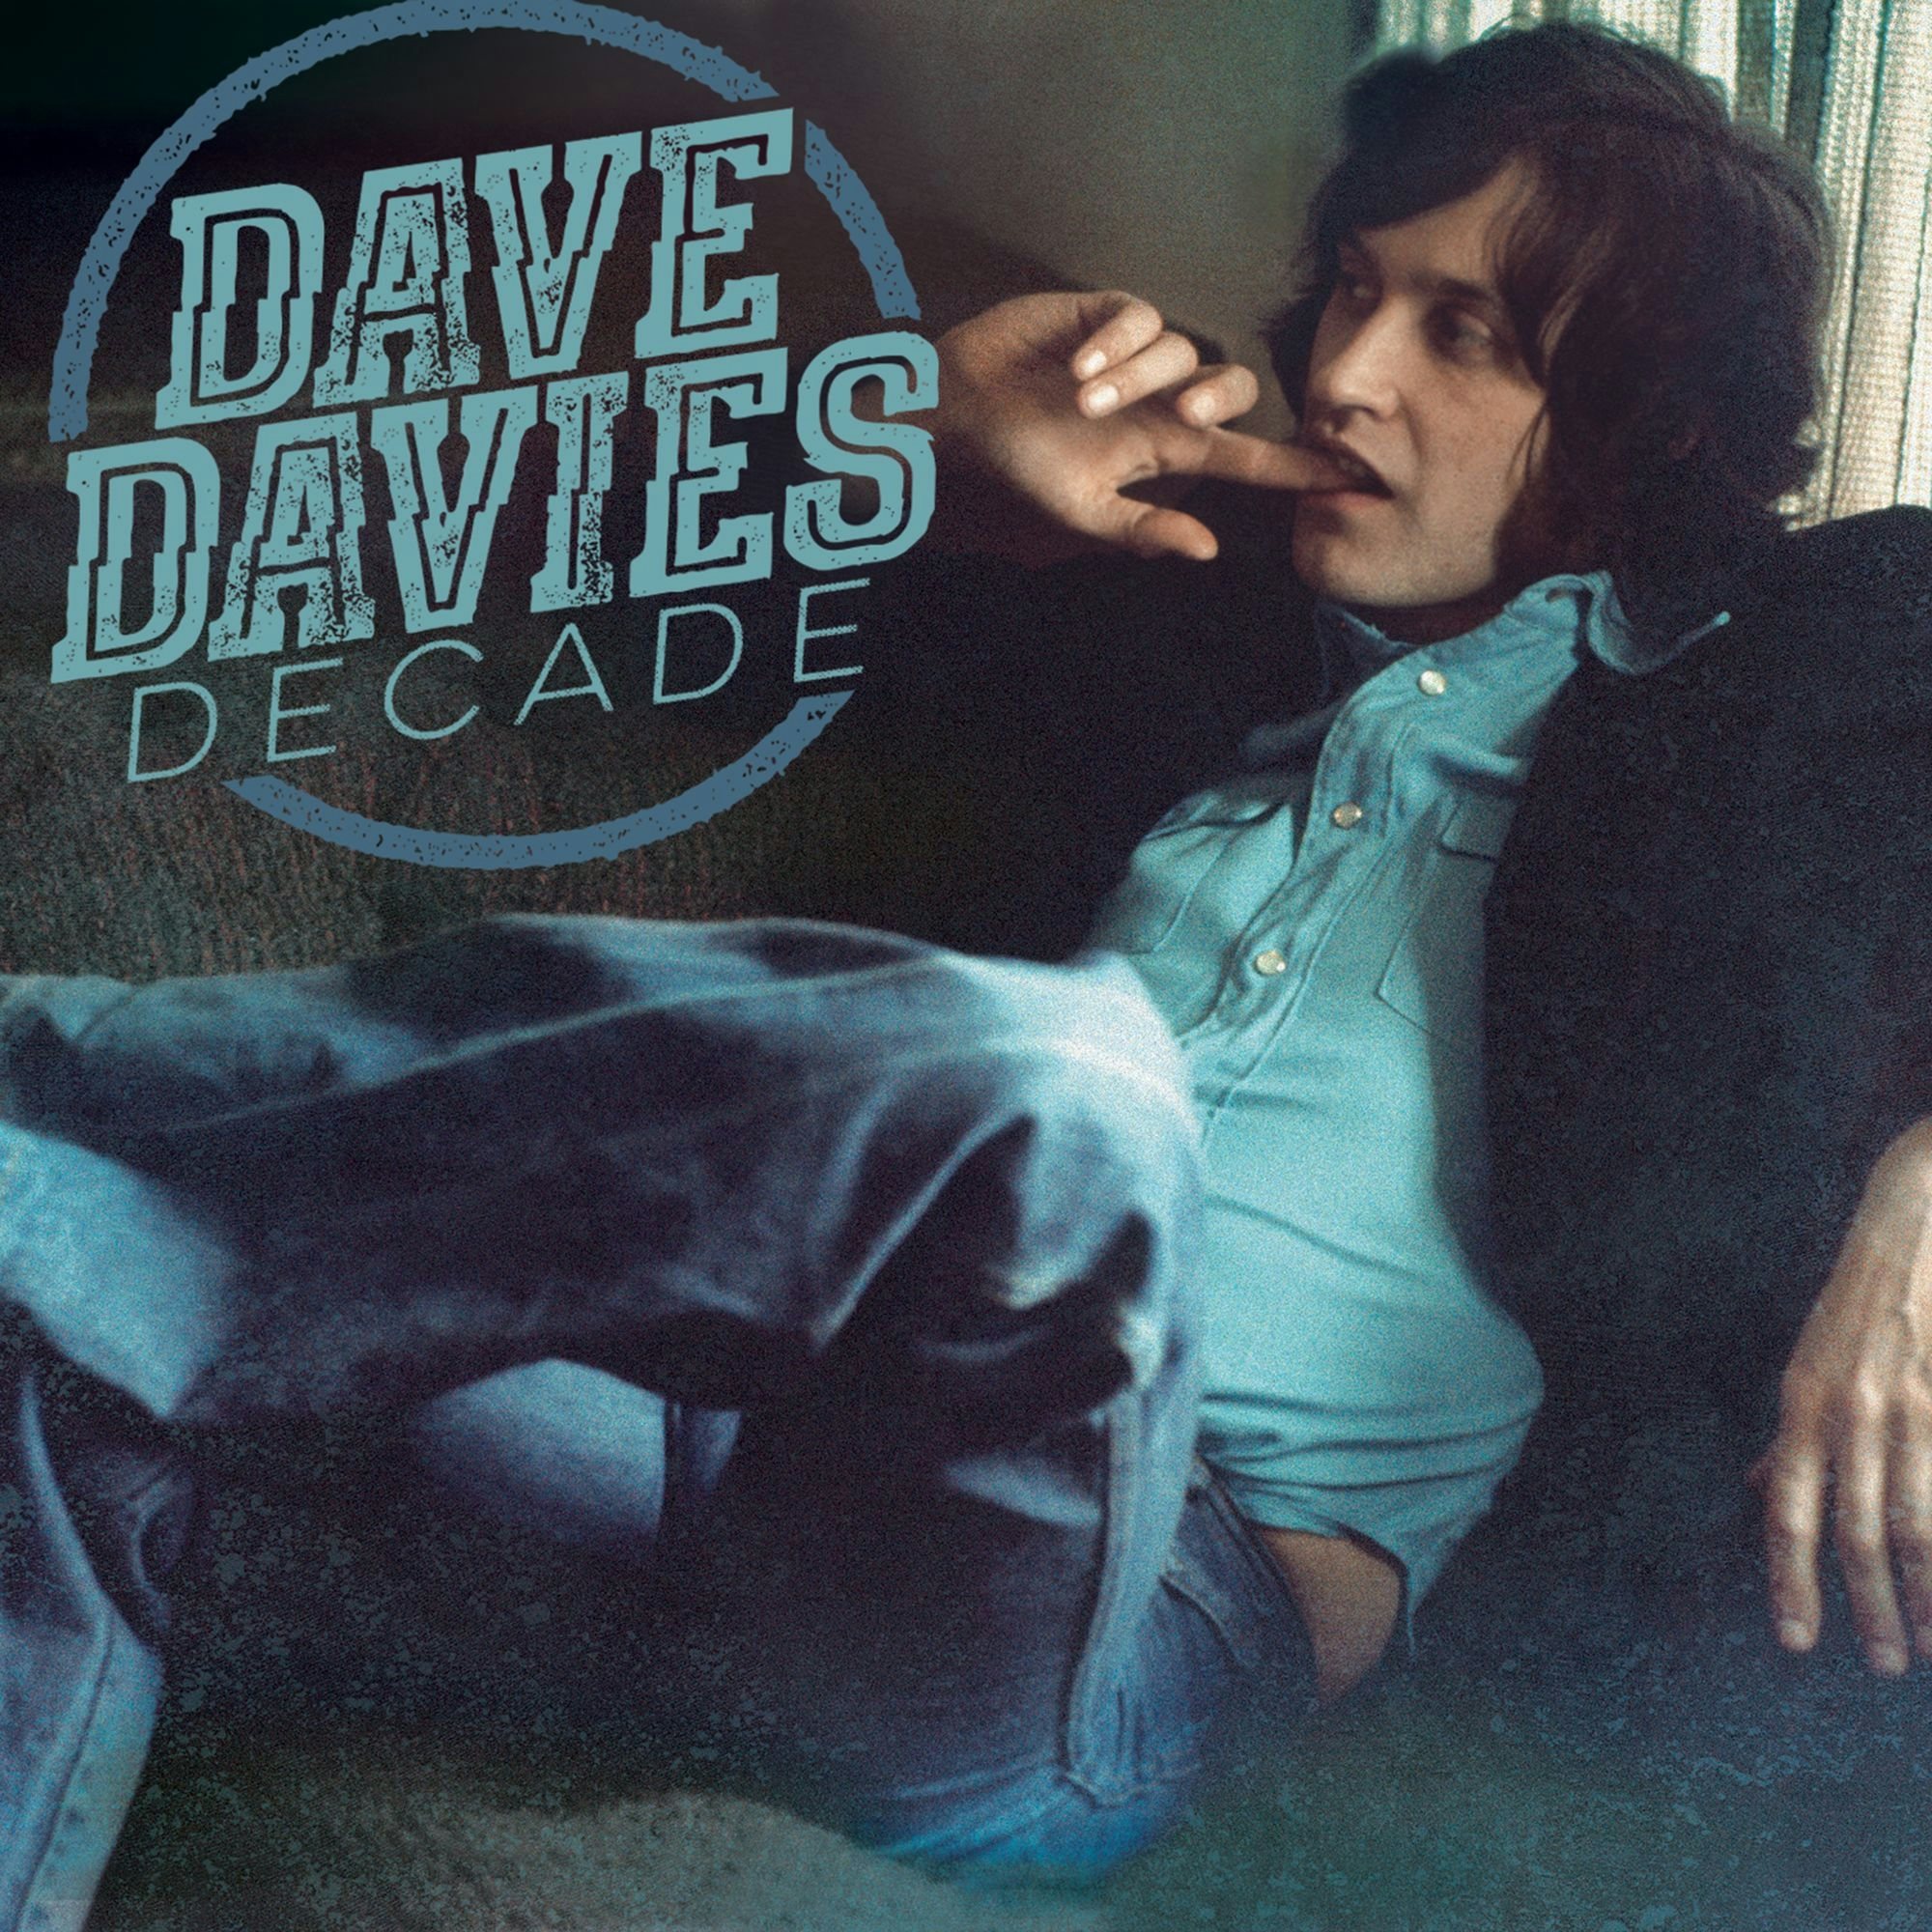 Album artwork for Album artwork for Decade by Dave Davies by Decade - Dave Davies